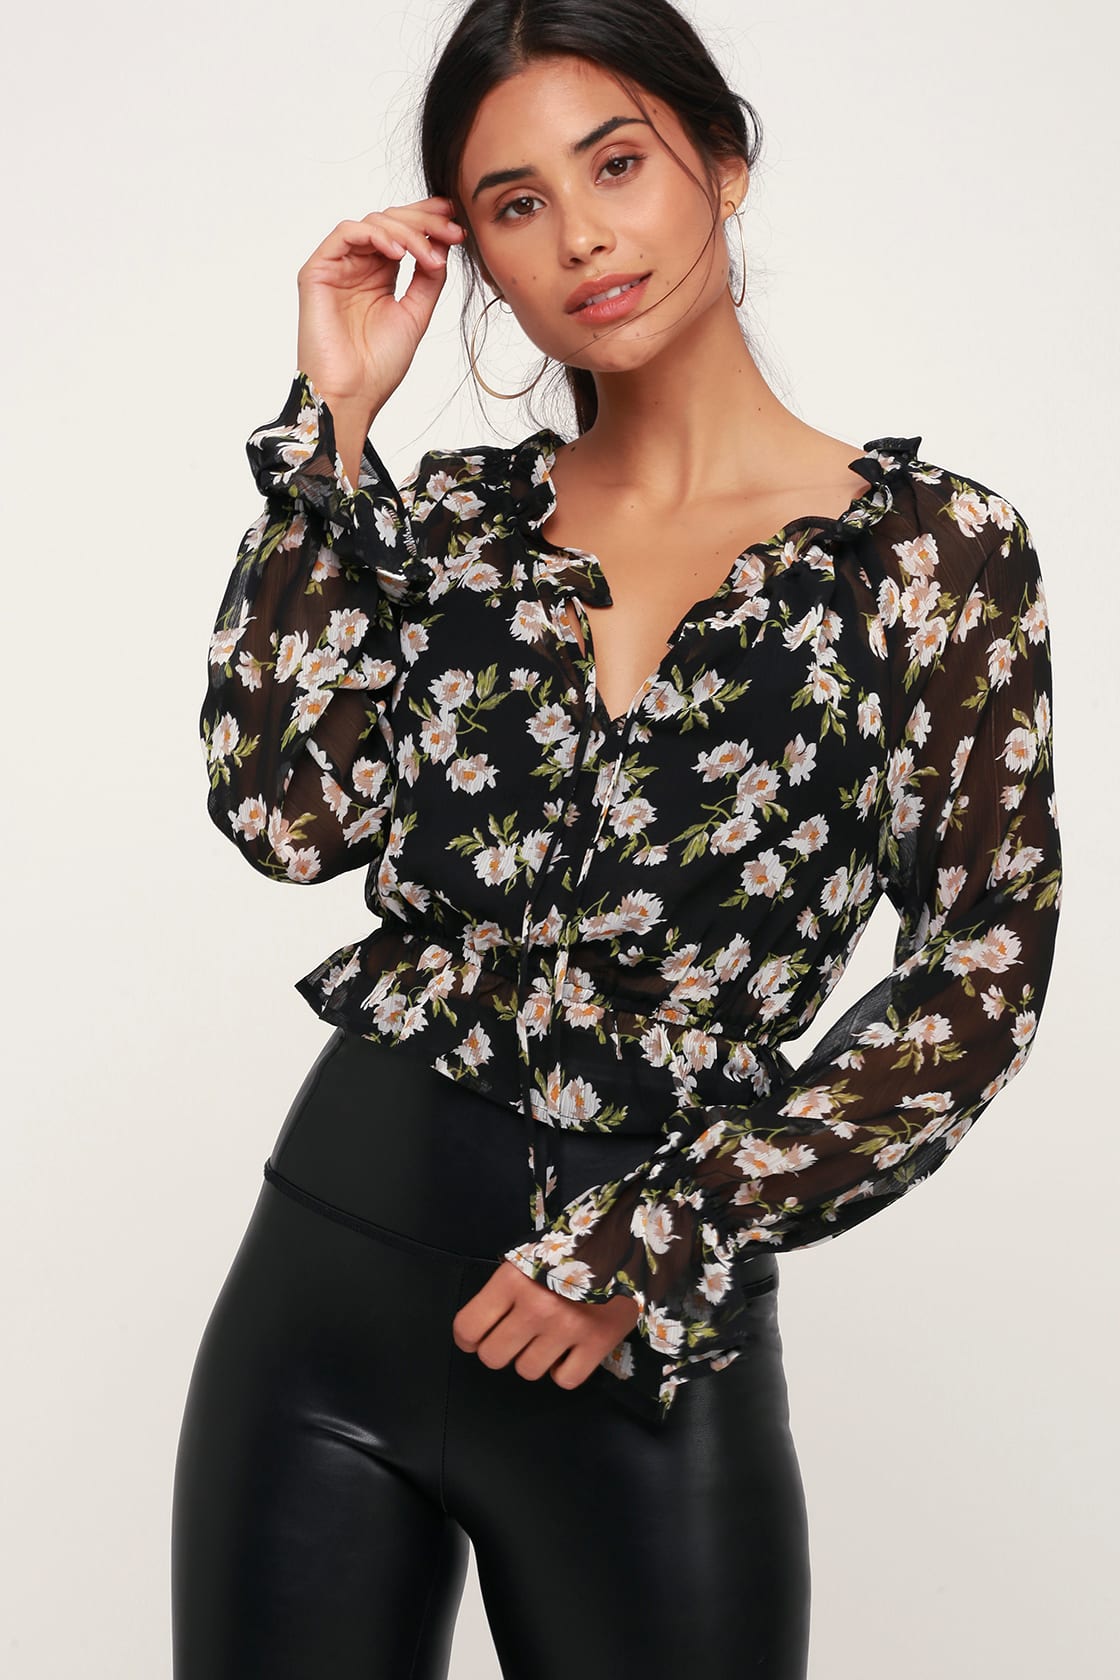 Cute Black Floral Top - Sheer Floral Top - Long Sleeve Top - Lulus